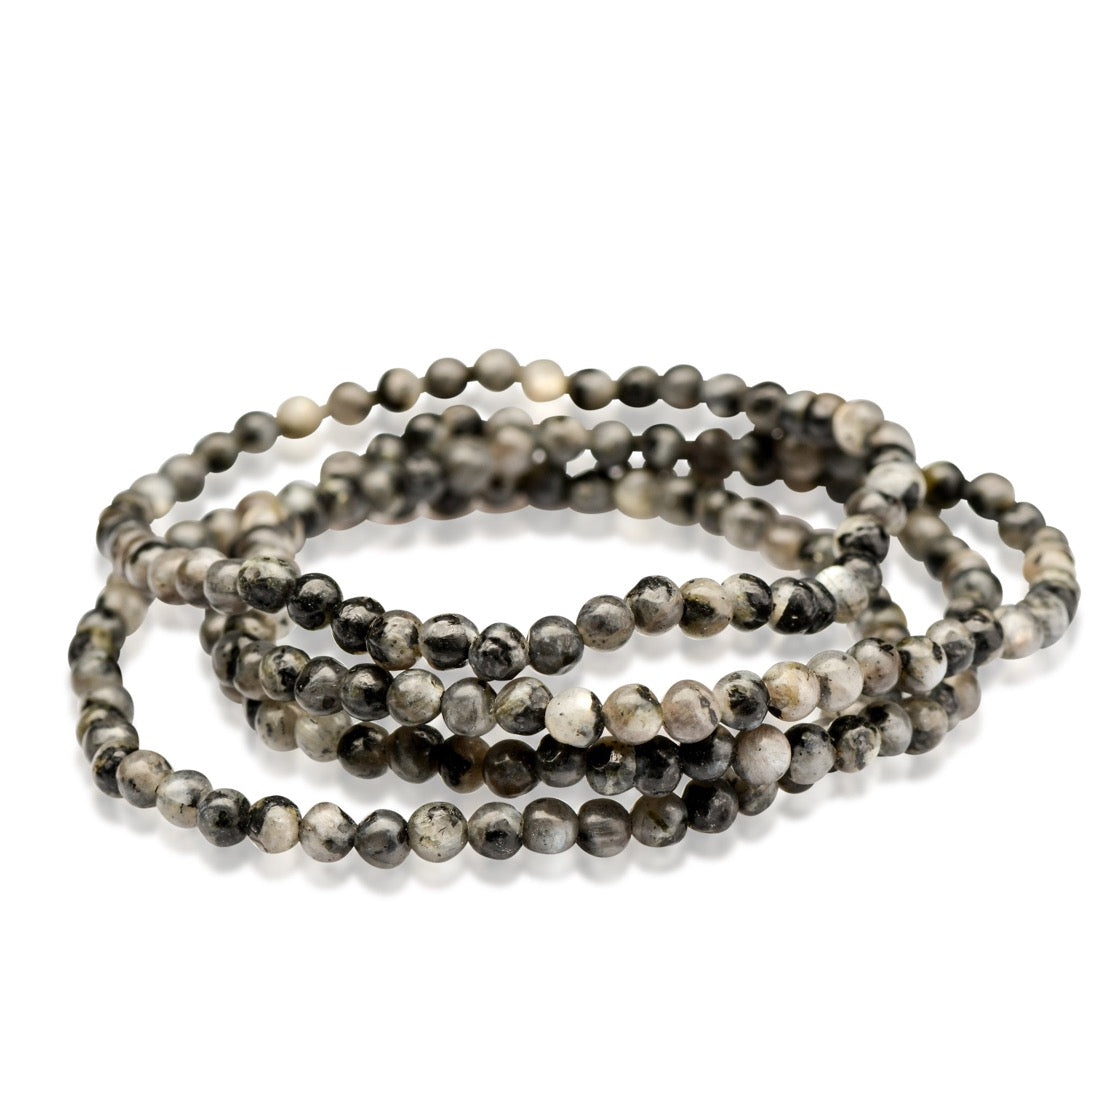 Crystal Jewelry: Black Labradorite Crystal Bracelets